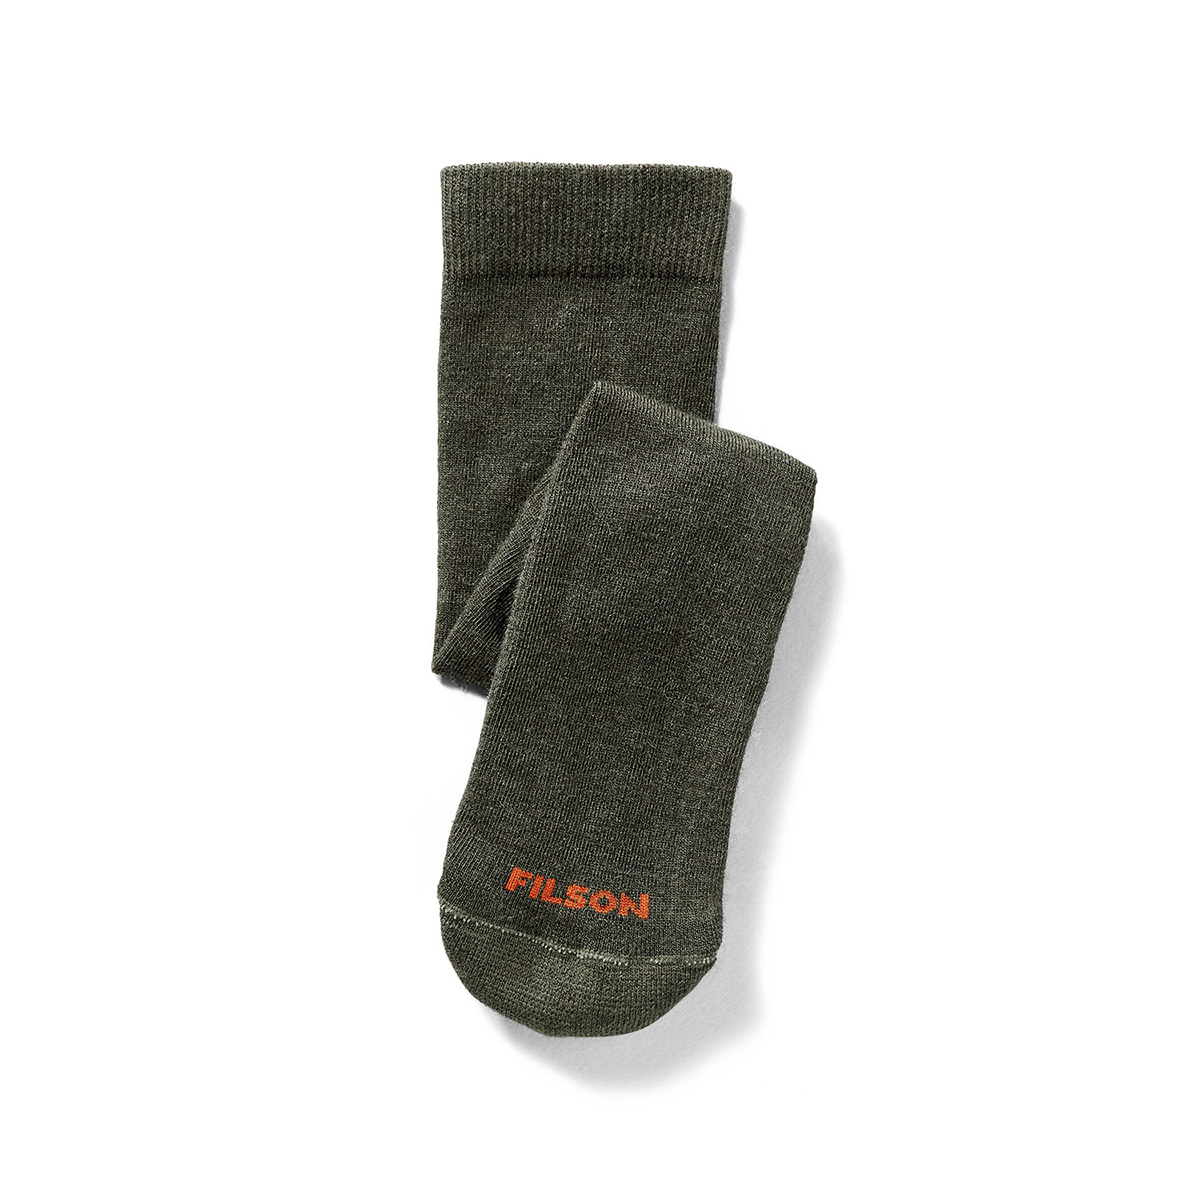 Filson Everyday Crew Sock Green. Versatile, midweight socks mit mittelstarken Polsterung und Merinowoll-Mix